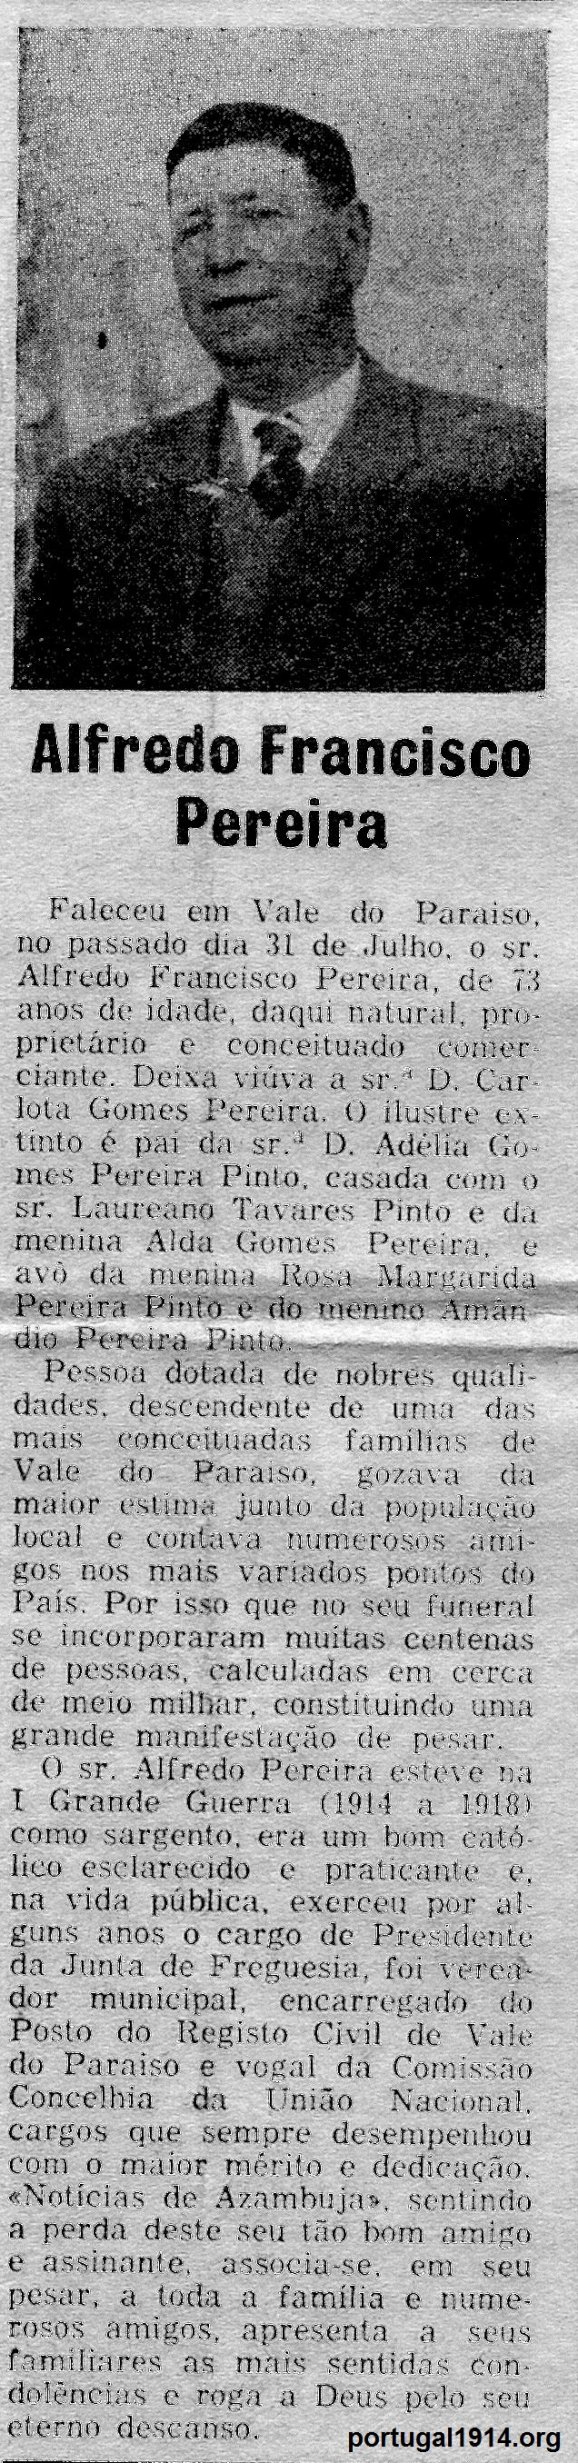 O falecimento de Alfredo Francisco Pereira - notícia de jornal